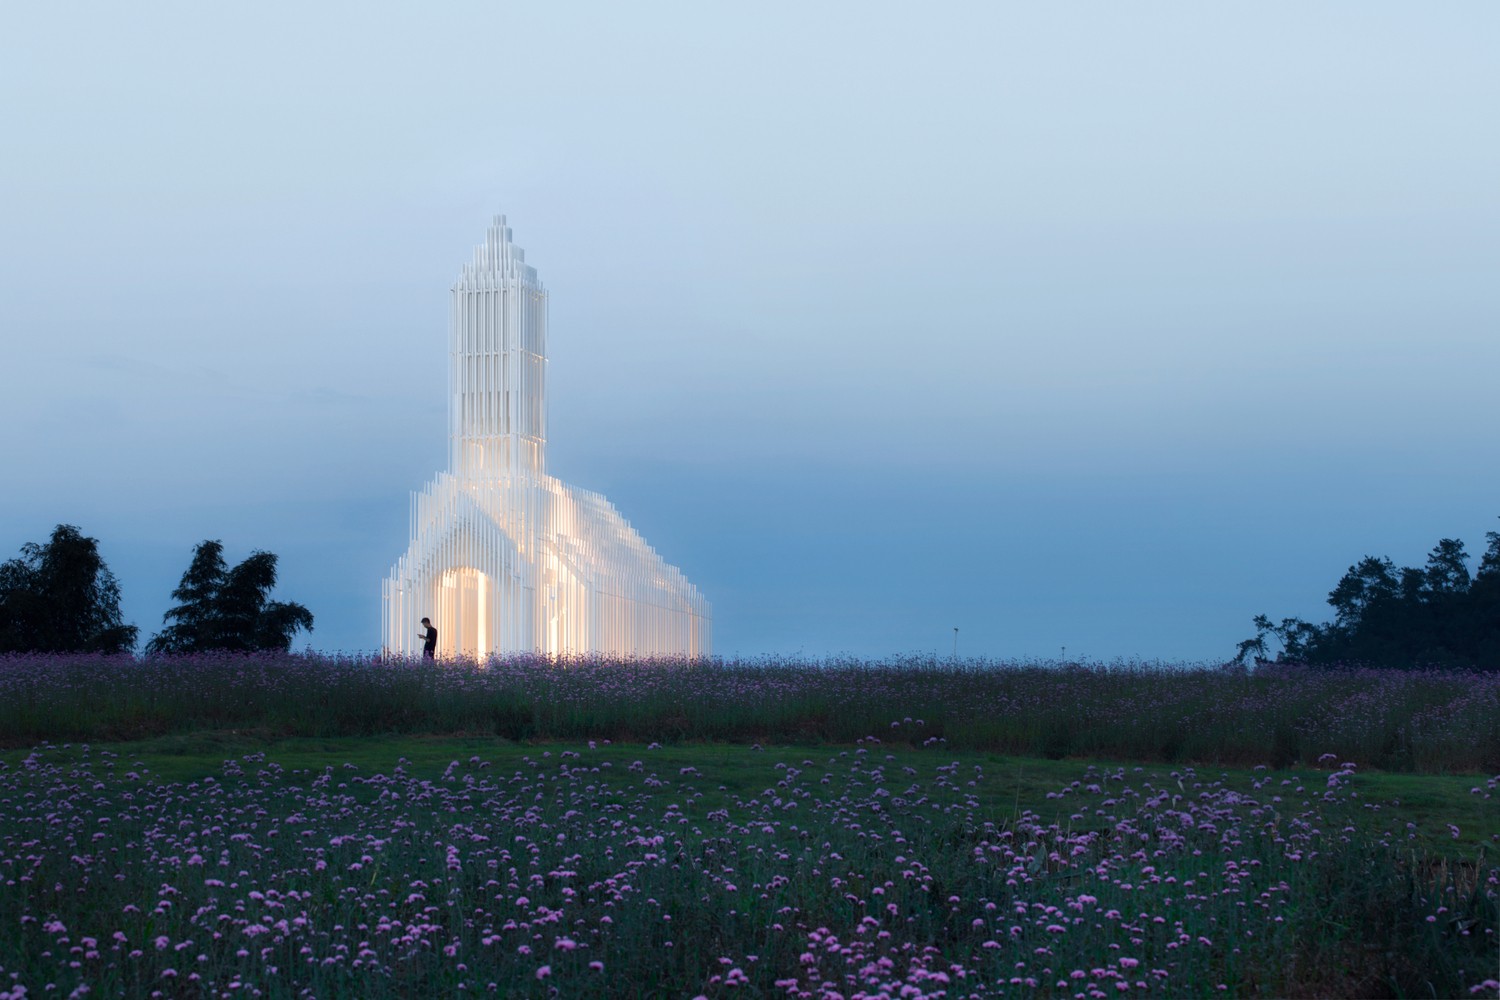 Esta é a igreja mais bela que você verá hoje - e ela fica em meio a campos de lavanda (Foto: Divulgação)